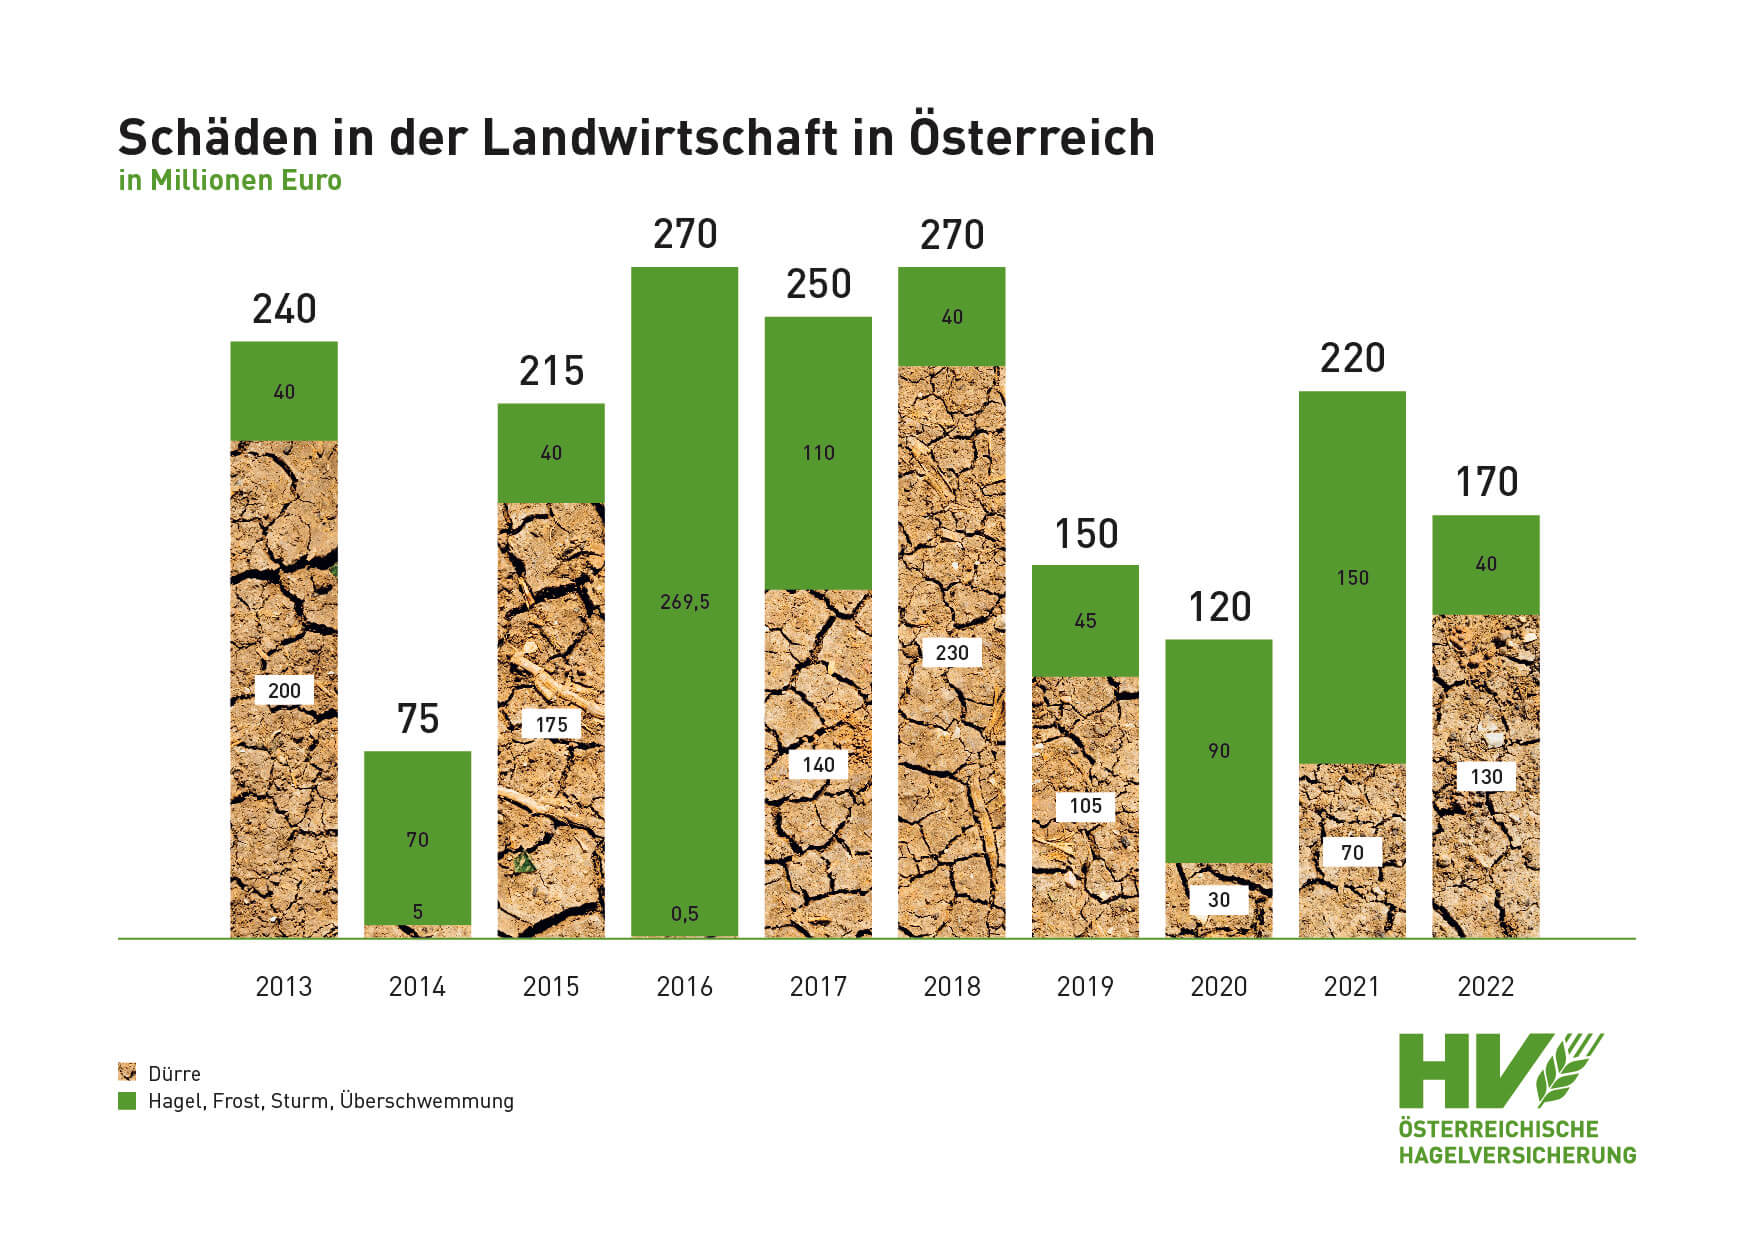 Schäden in der Landwirtschaft in Österreich 2013 bis 2022